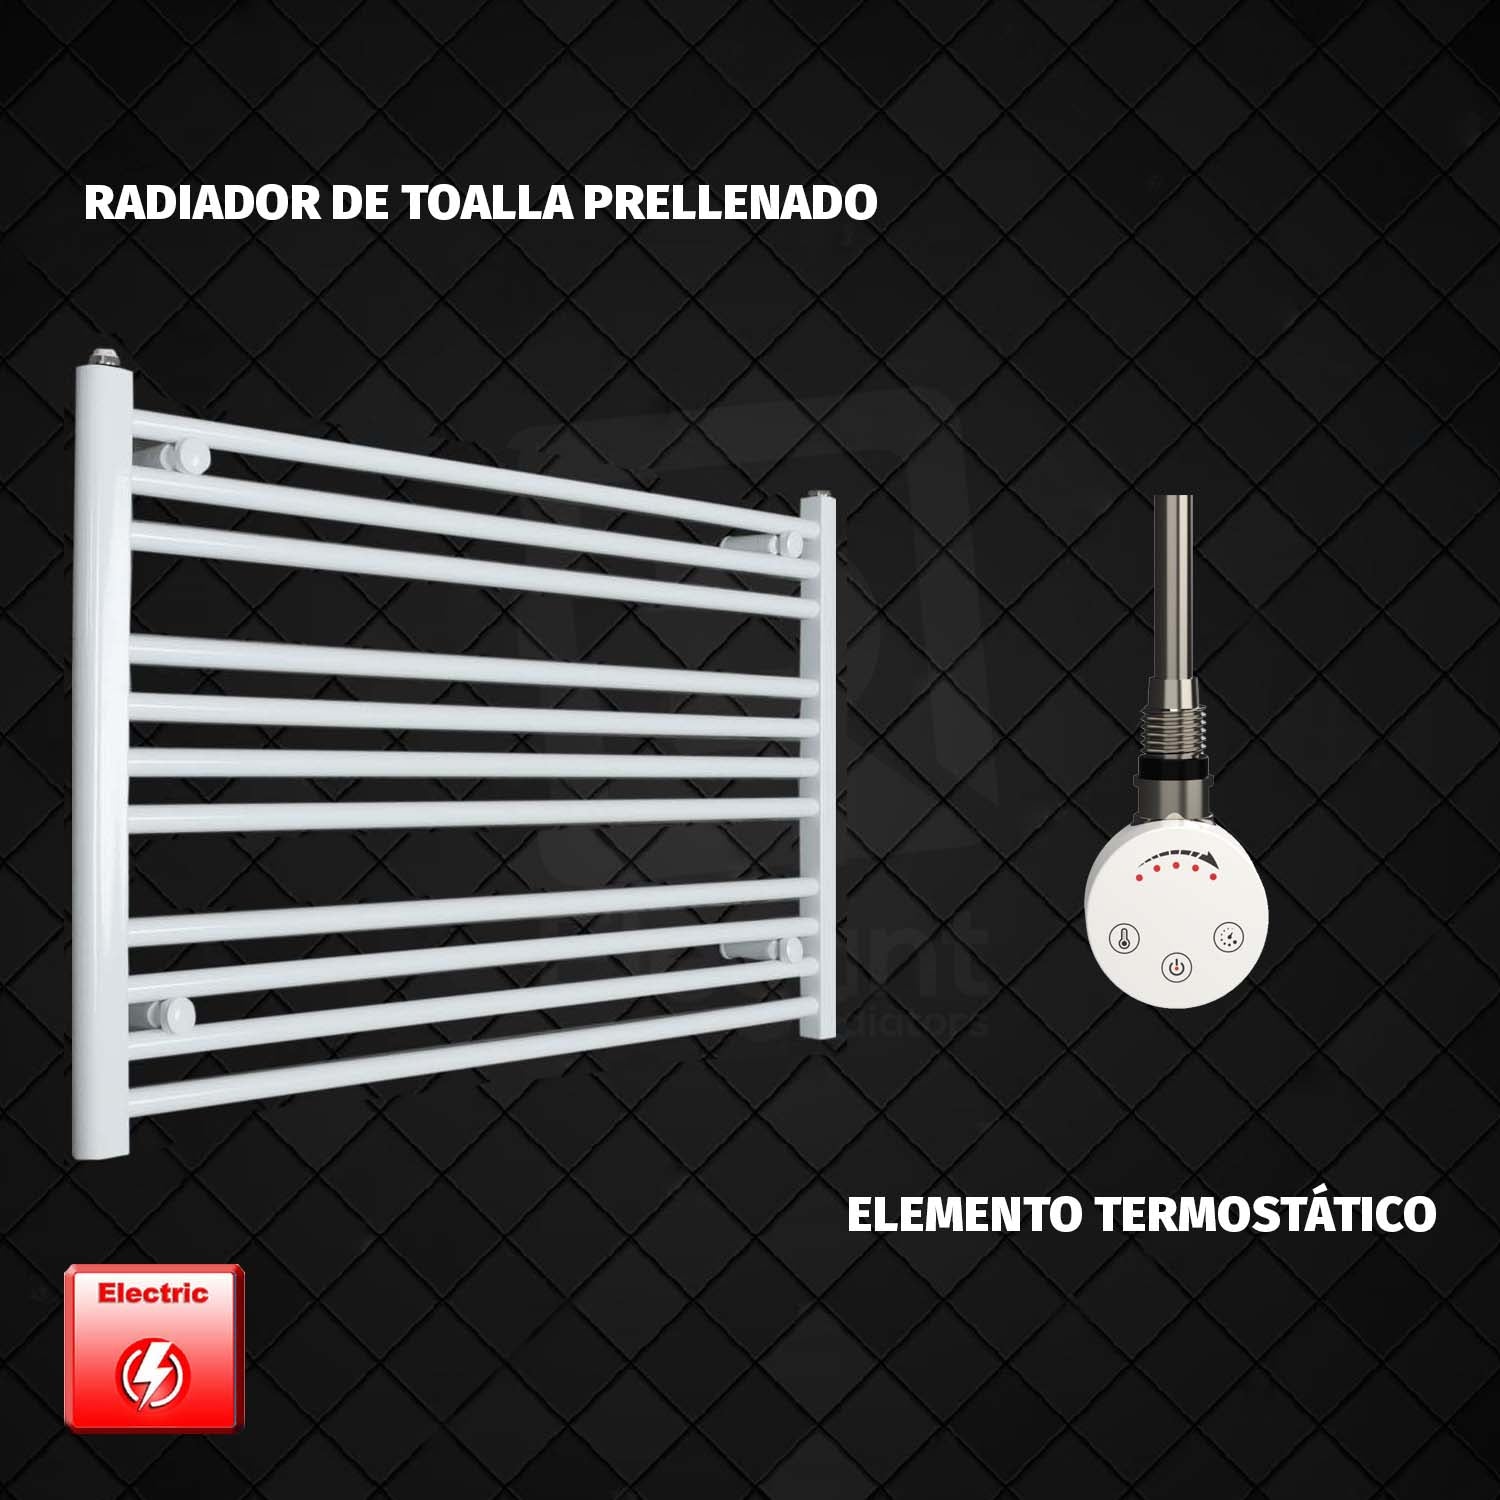 Radiador Toallero Eléctrico Blanco 1300x600mm (Prellenado)